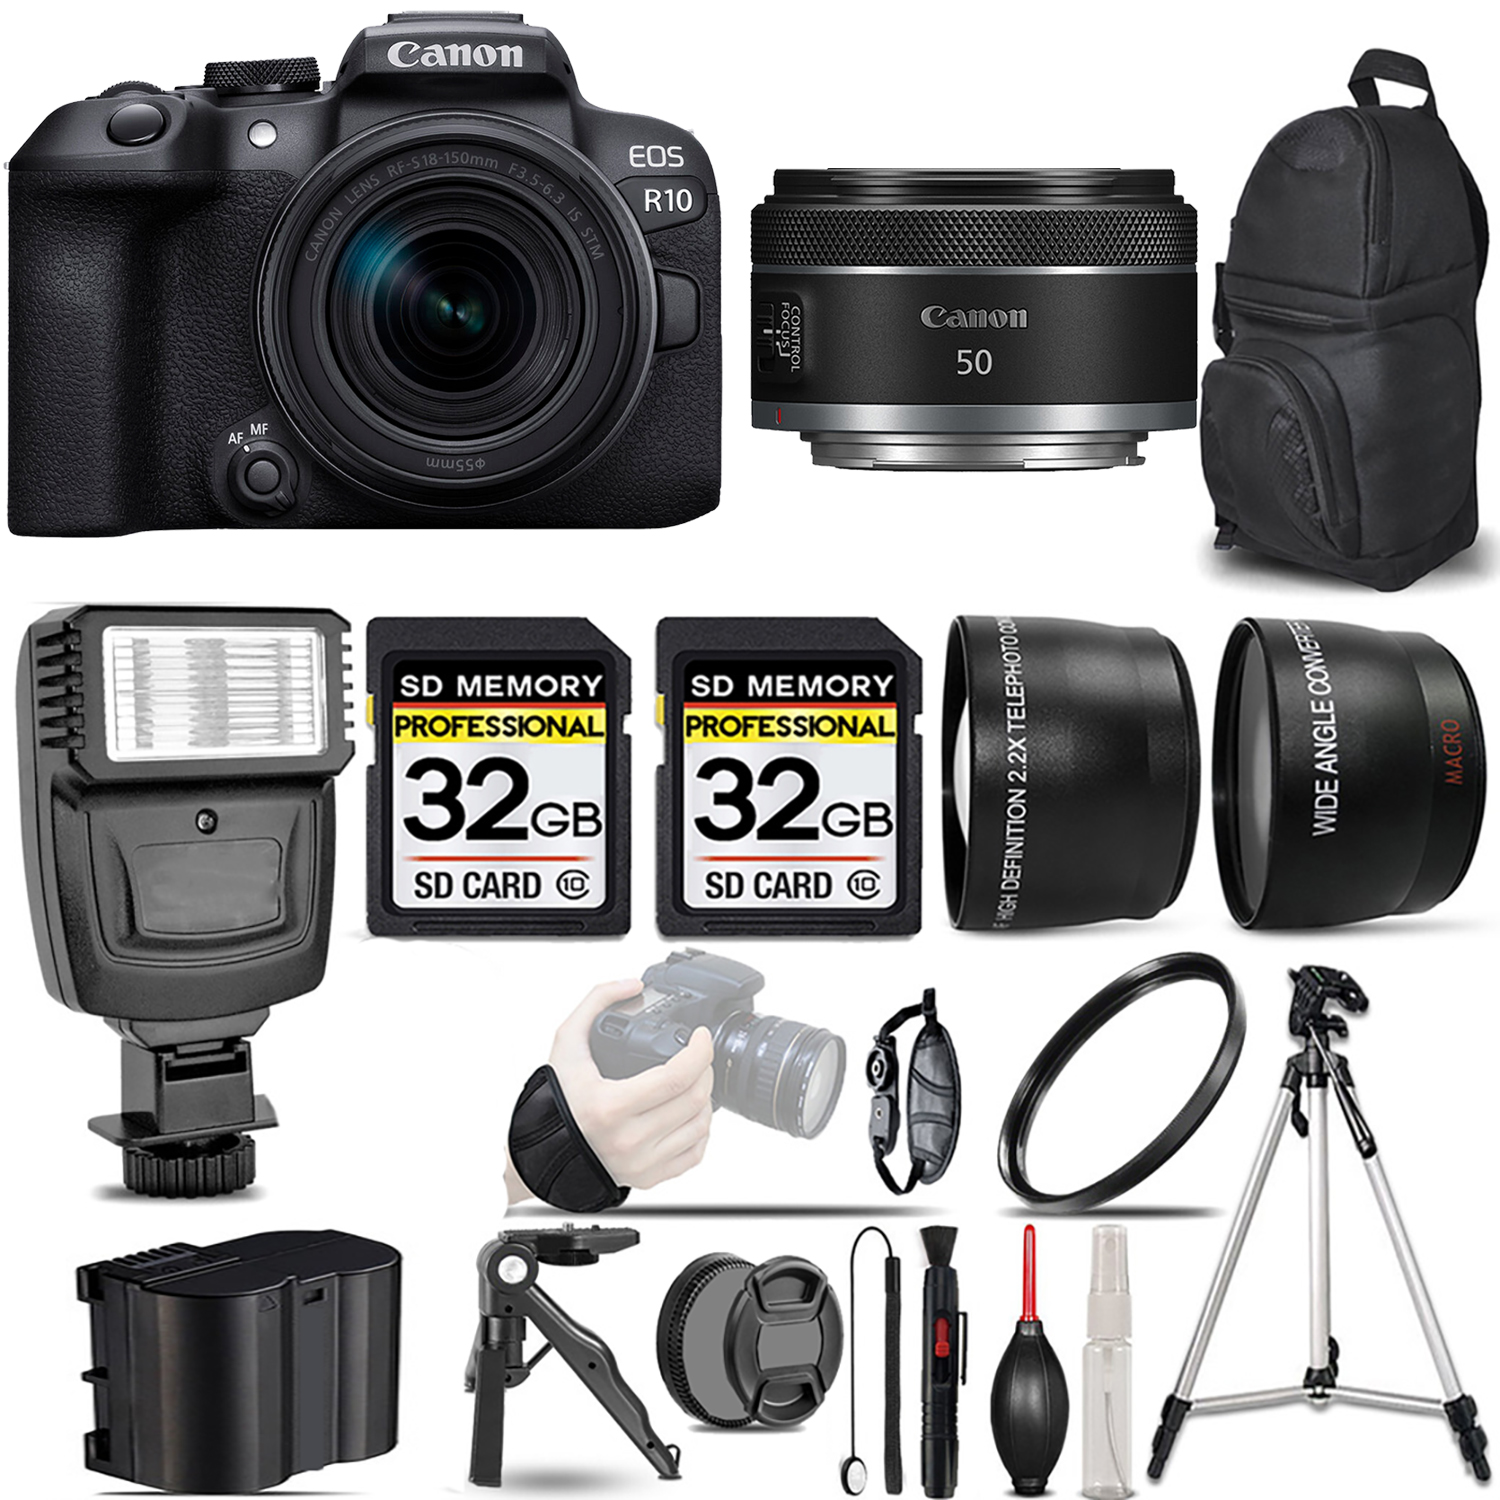 EOS R10 Camera + 18-150mm Lens + 50mm f/1.8 STM Lens + Flash + 64GB - Kit *FREE SHIPPING*